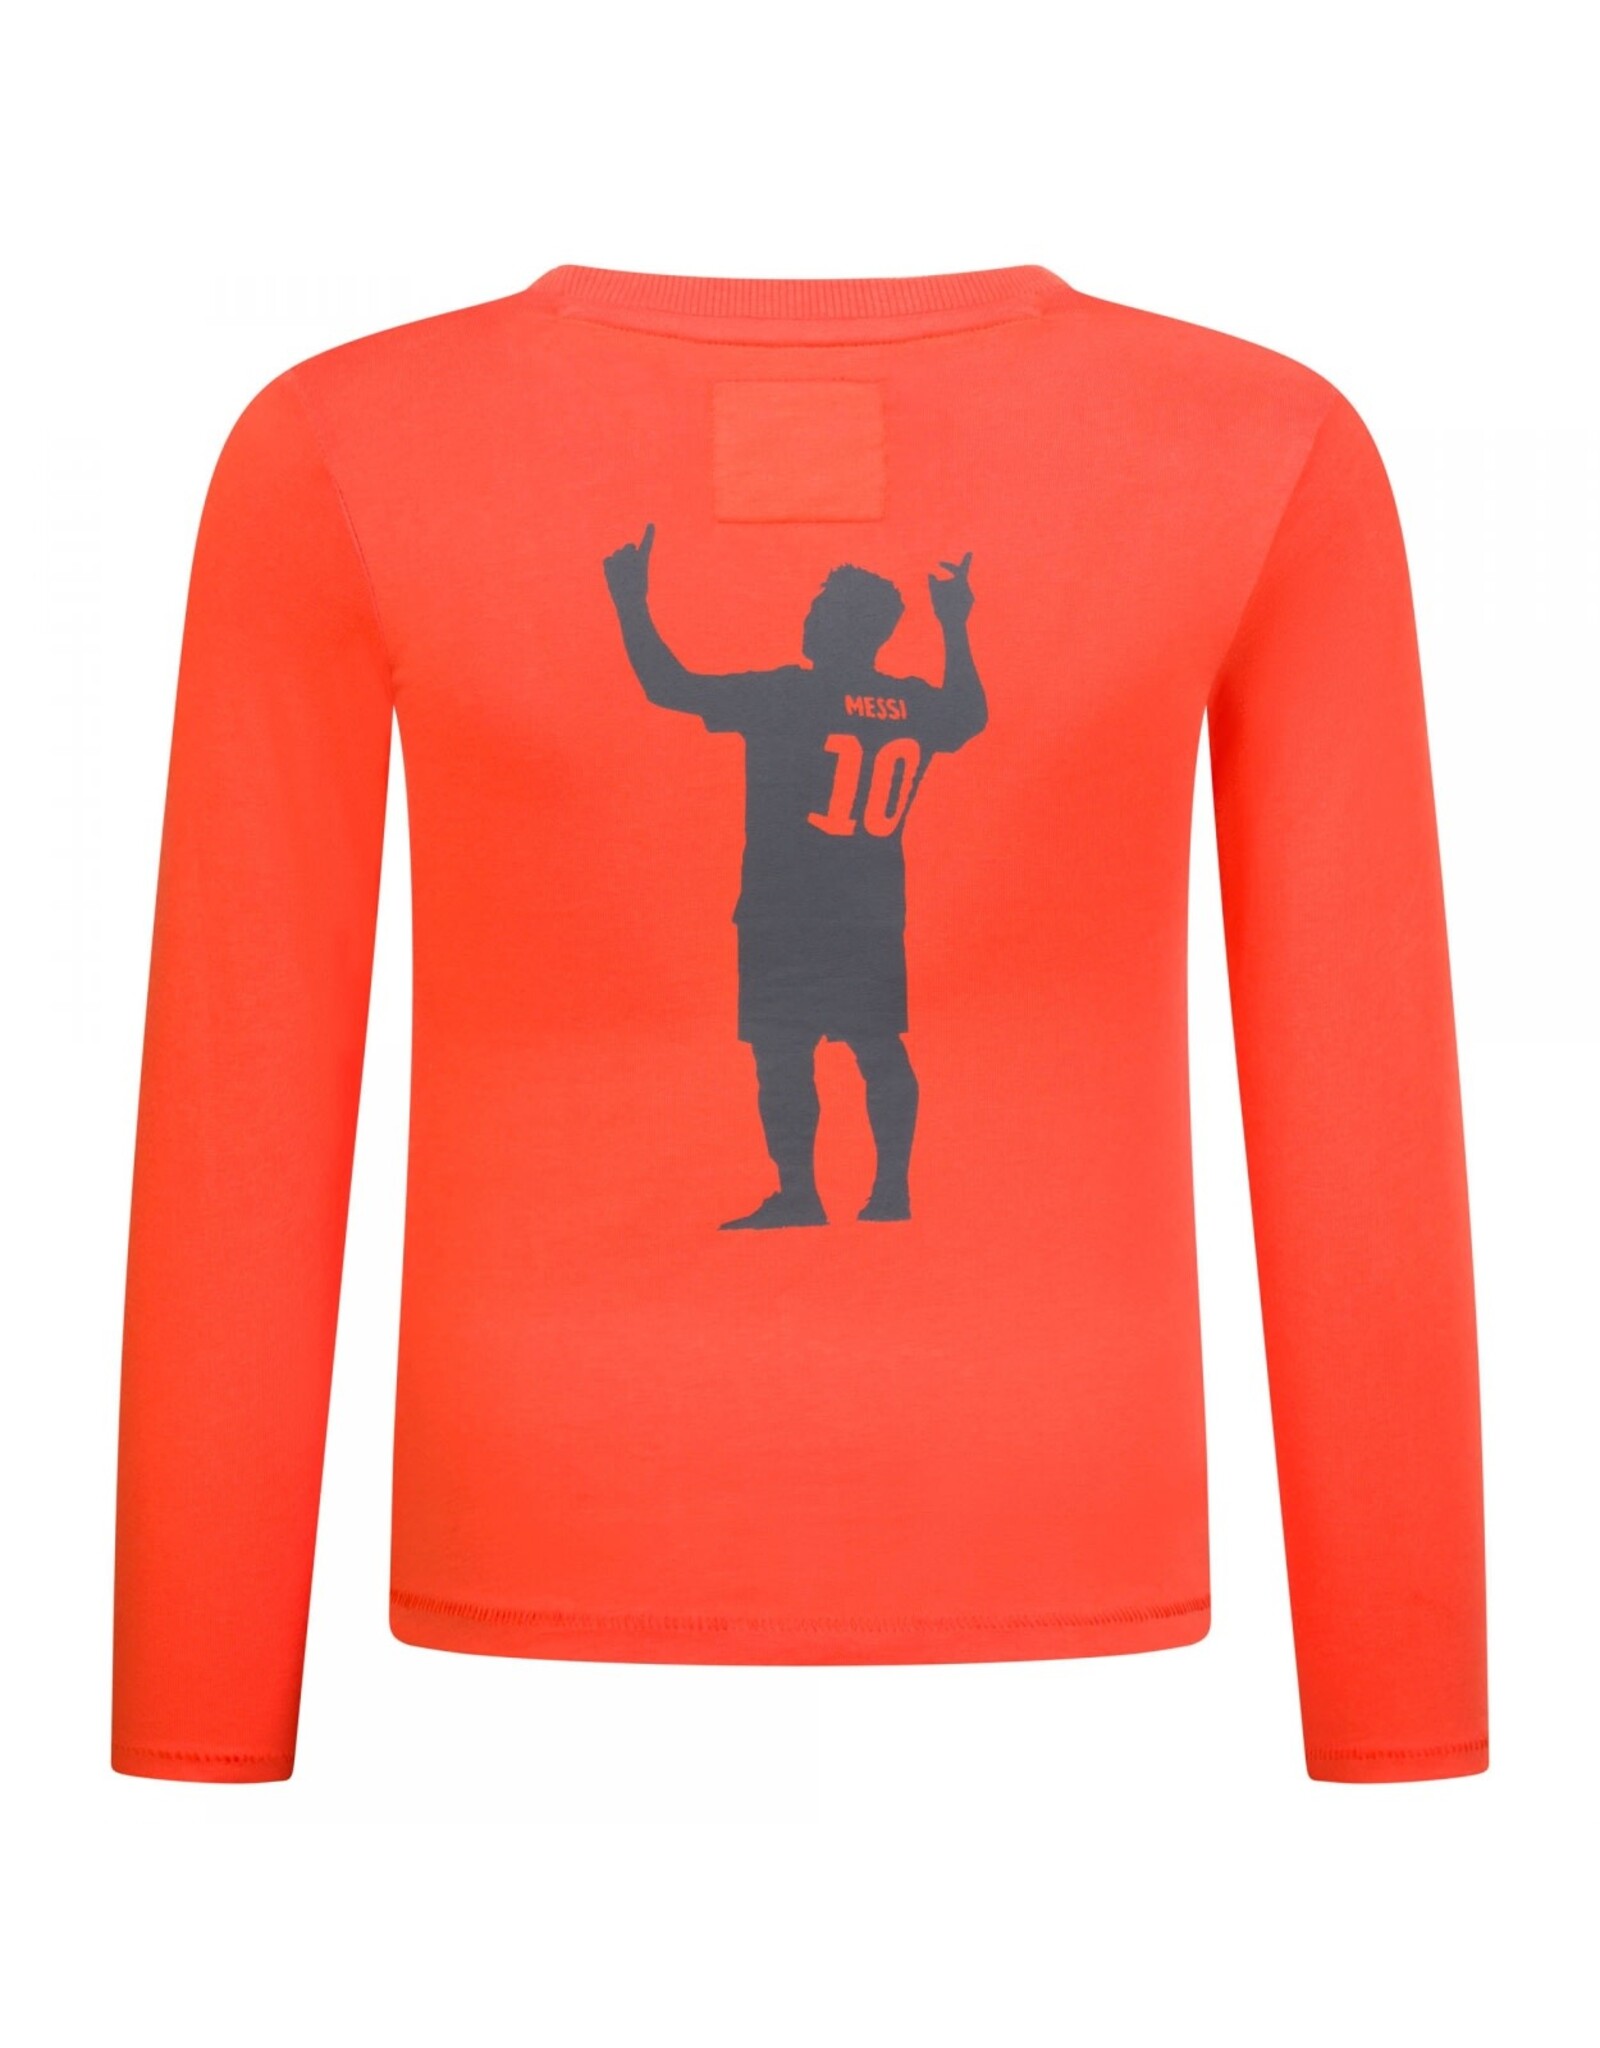 T-shirt ls Neon orange M